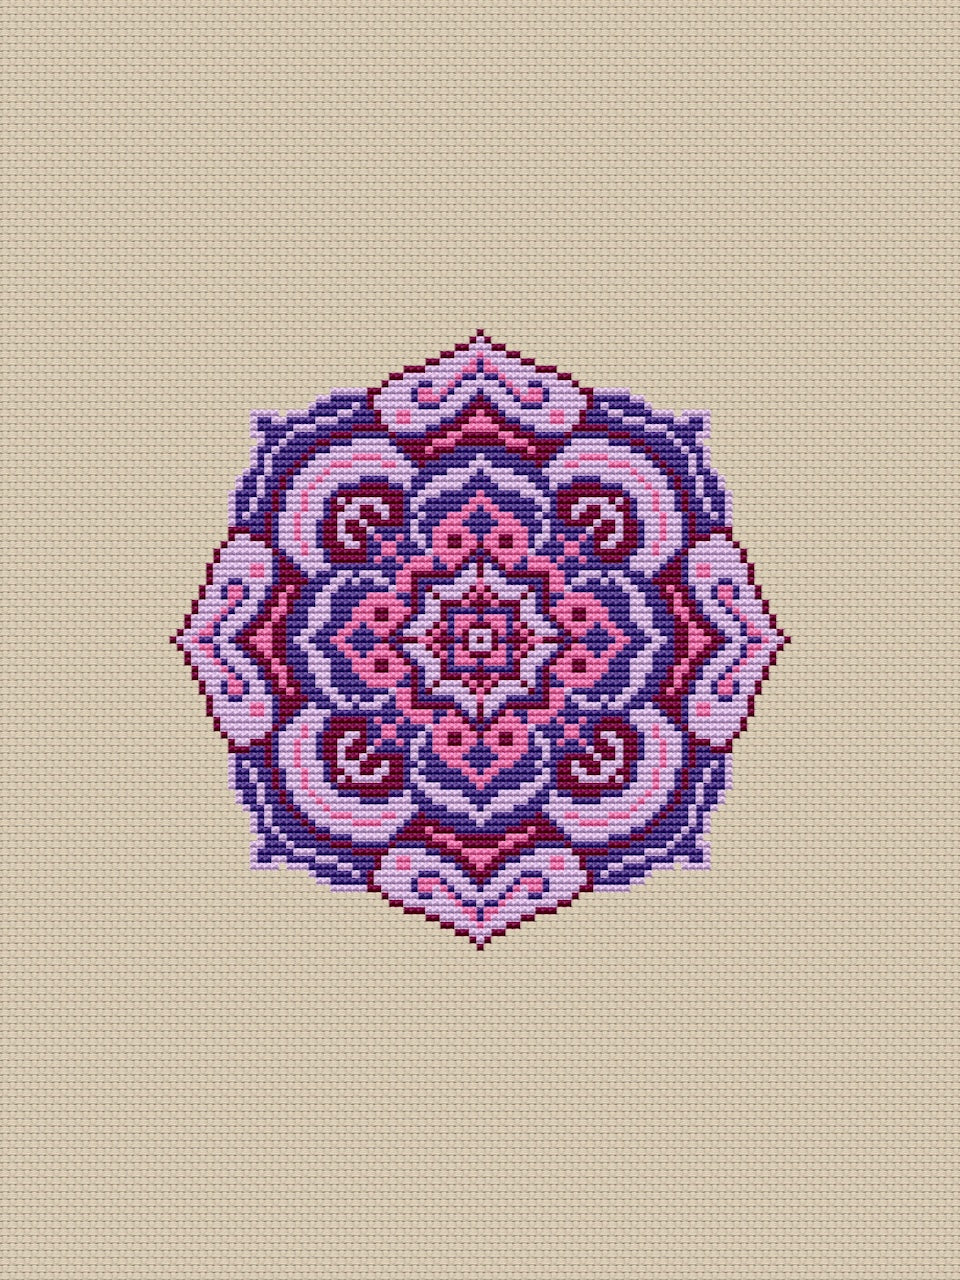 mandala embroidery pattern